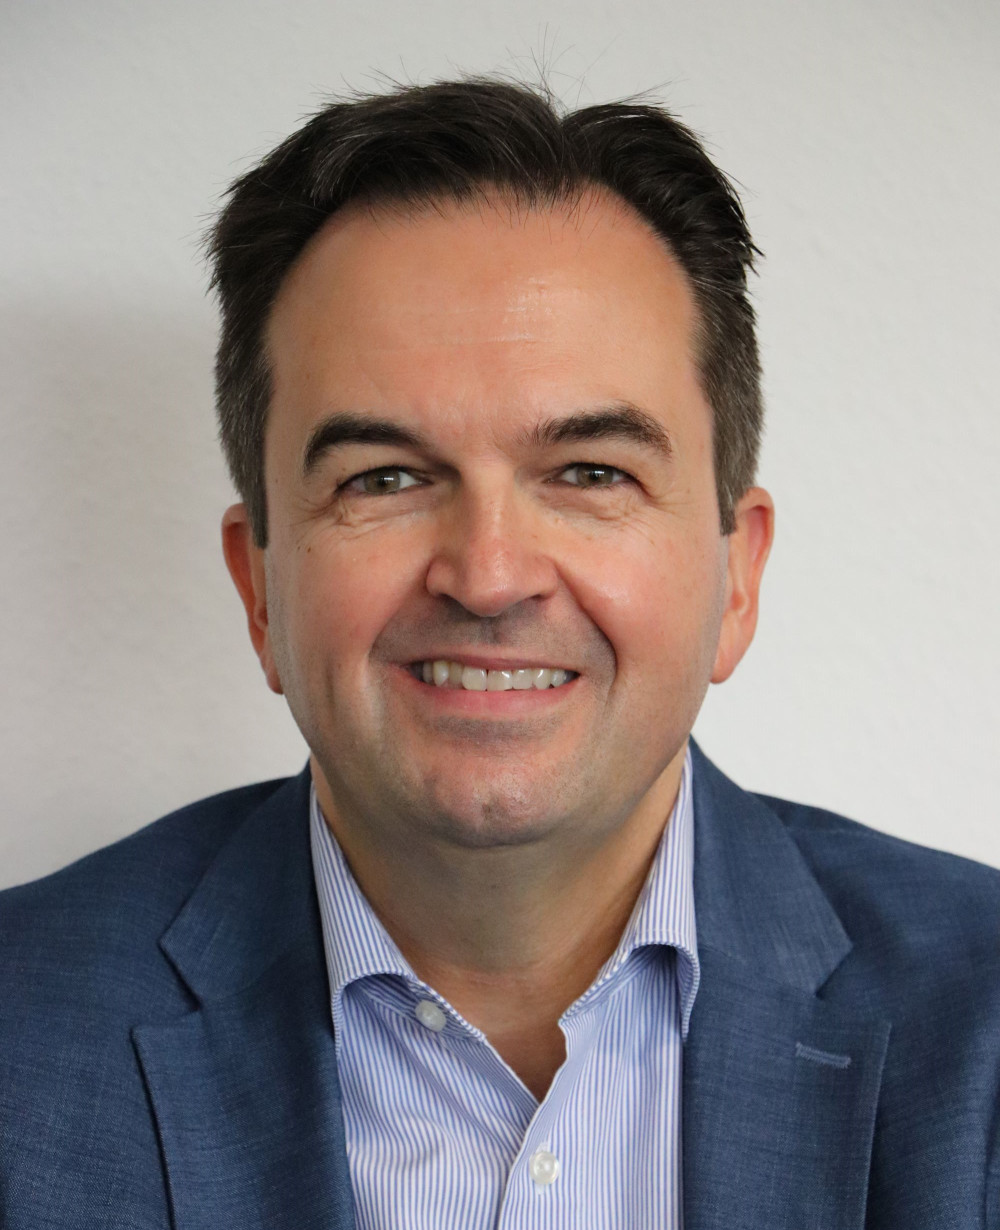 Hanspeter Weilenmann is the new CFO of JMH